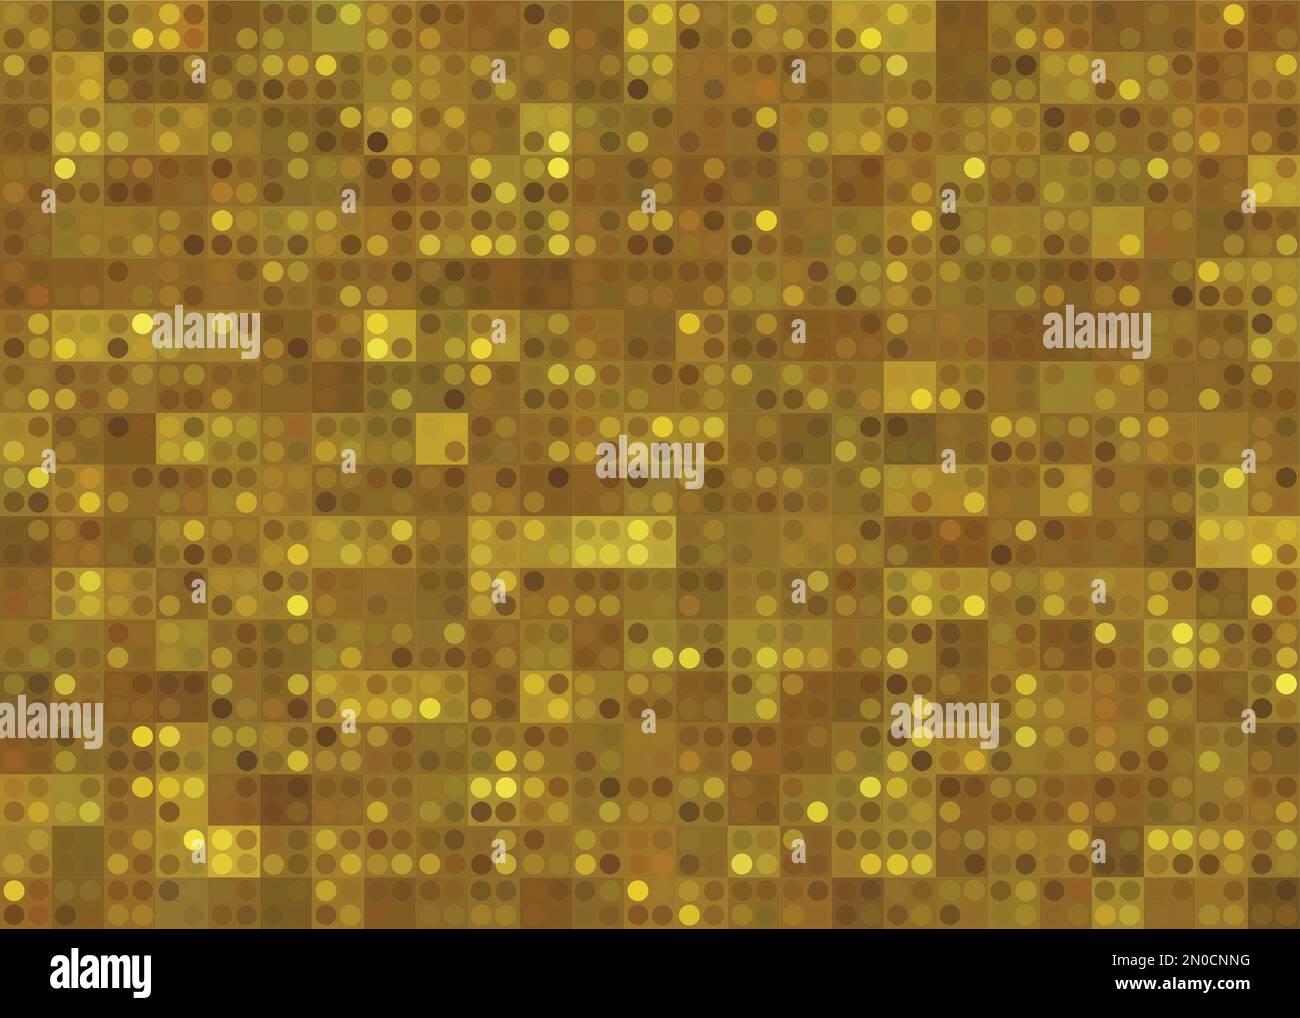 Pizzo d'oro su fondo marrone versato. immagine vettoriale digitale stilizzata astratta goffrata in oro Illustrazione Vettoriale